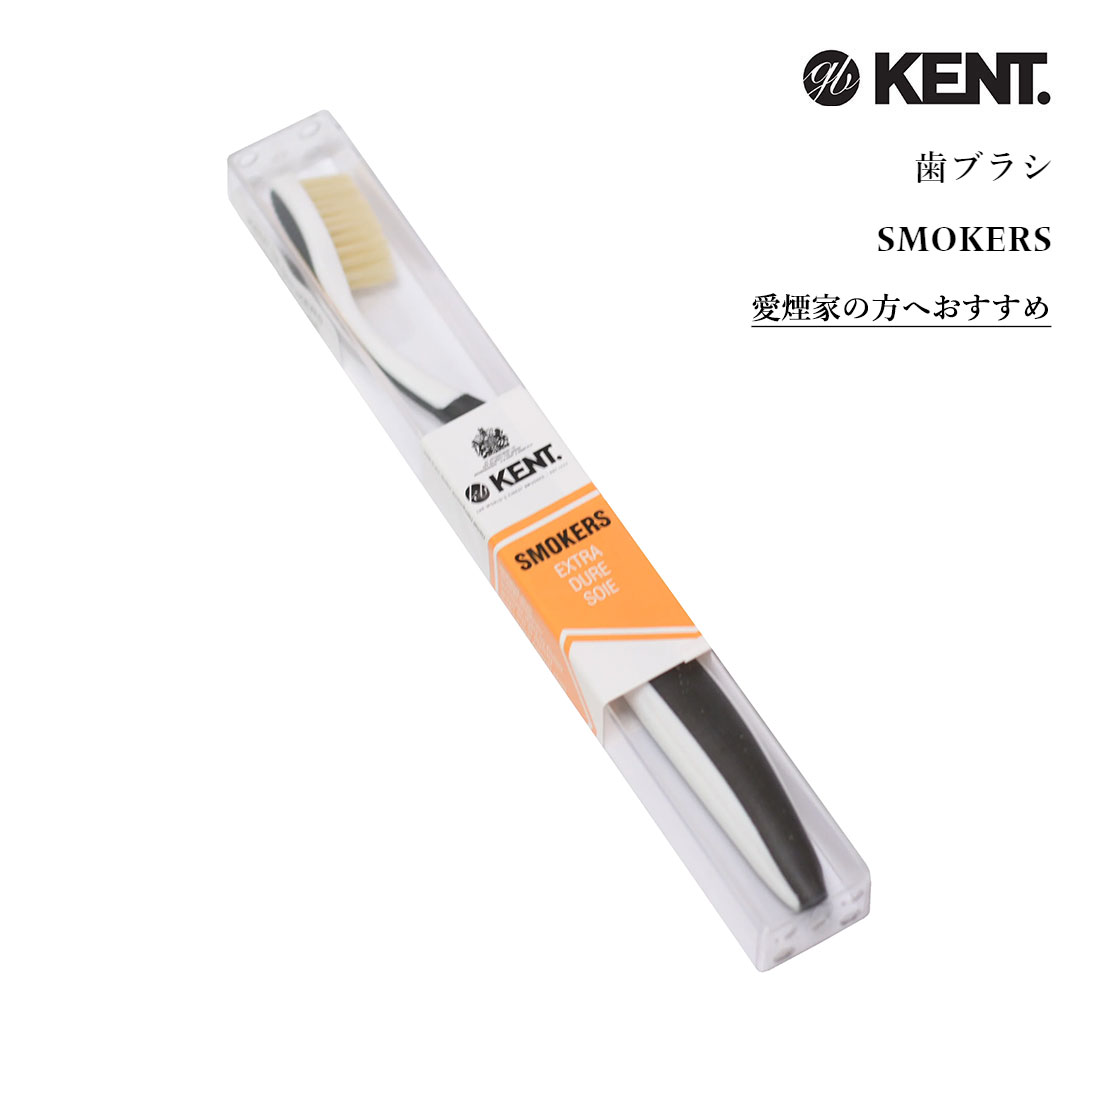 ケント スモーカーズ 歯ブラシ 豚毛 天然 大人用 かため はぶらし ハブラシ 硬め たばこ タバコ 煙草 高級 プレゼント KENT SMOKERS Extra Hard Toothbrush